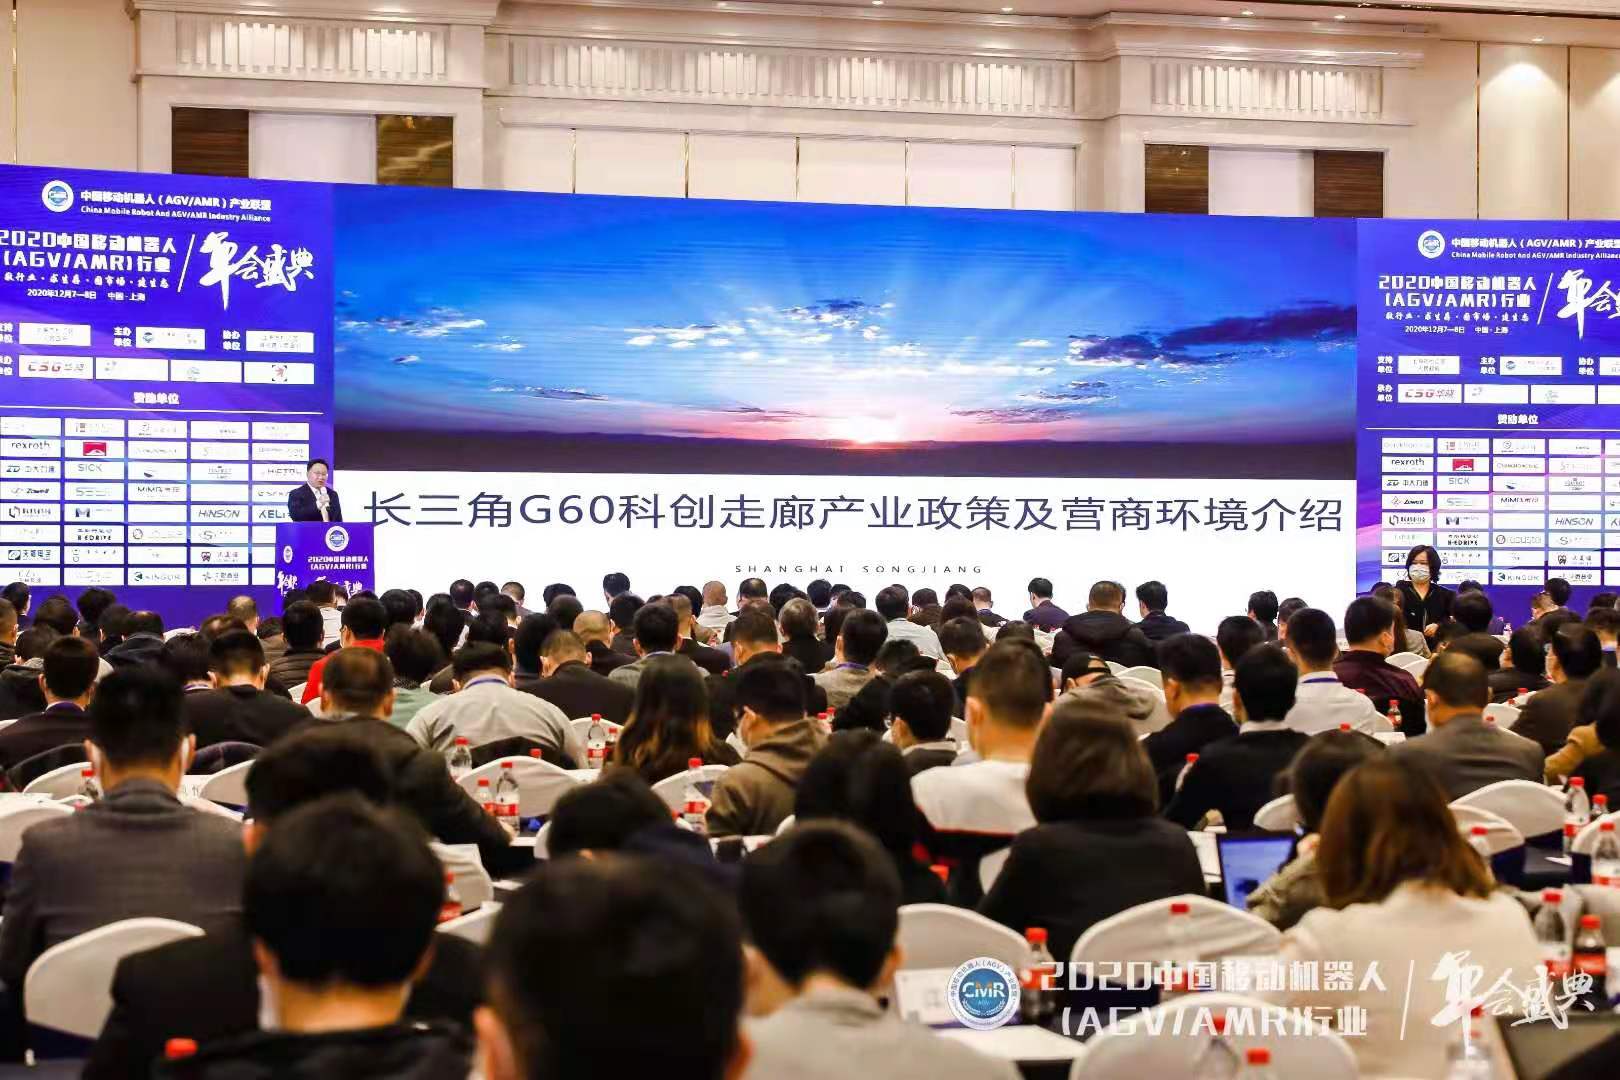 中国移动机器人行业年会